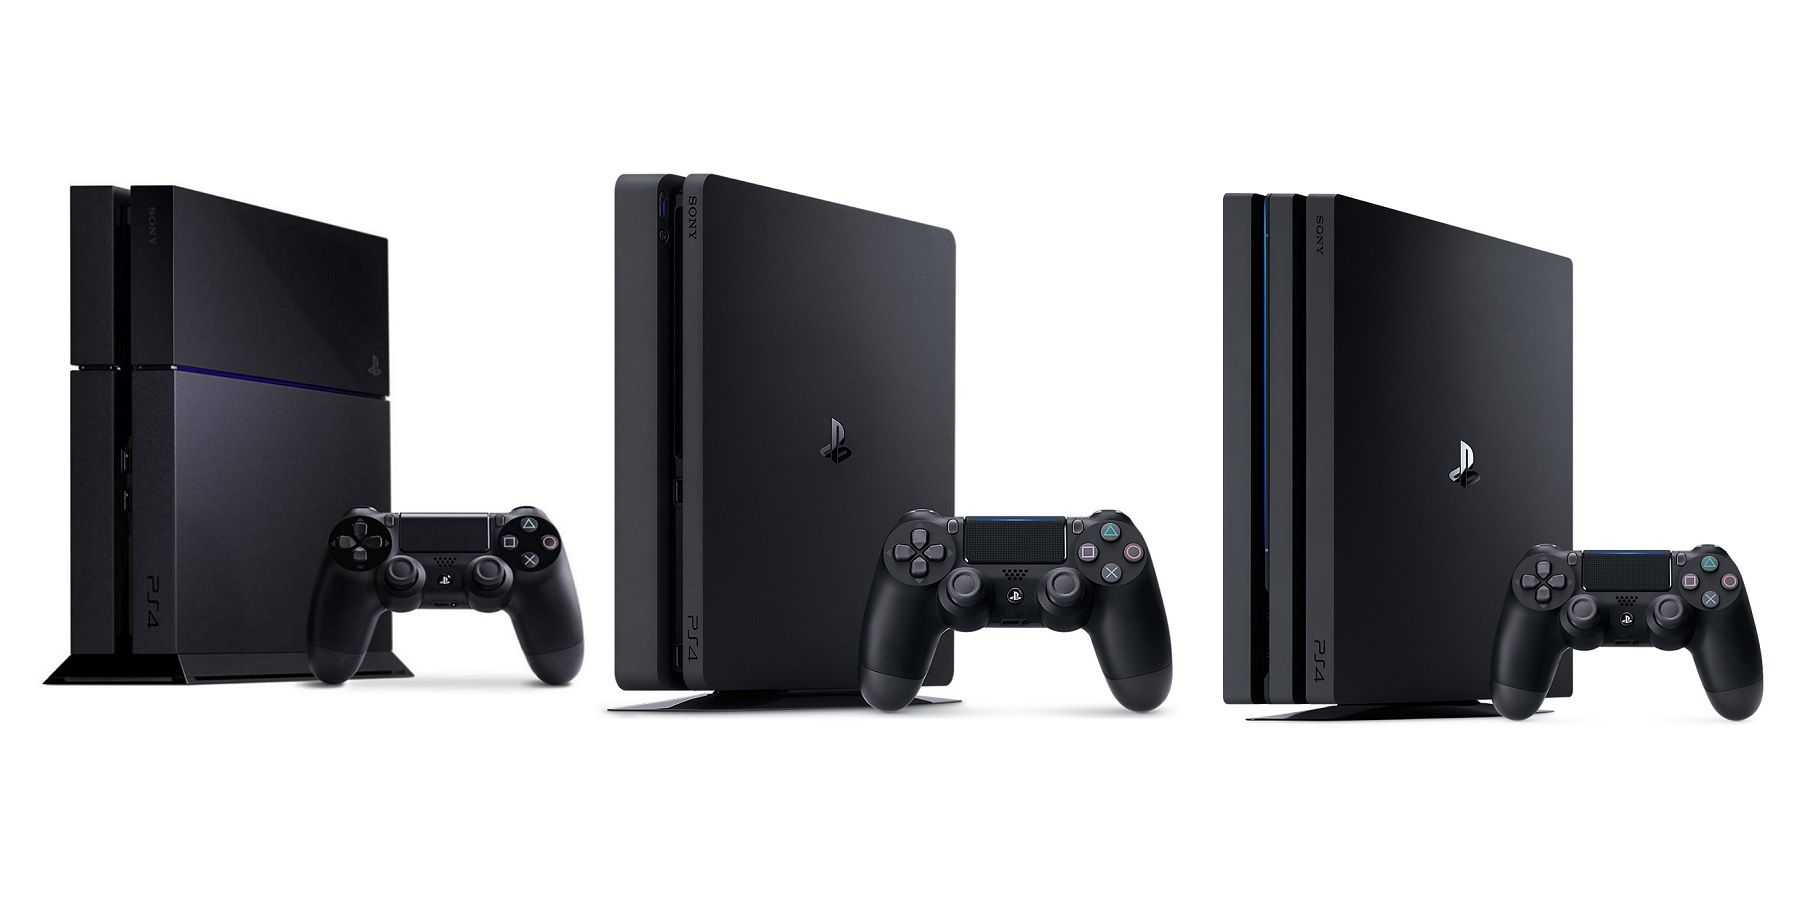 PlayStation 4 Slim - осторожный ход Sony с удивительно хорошим результатом